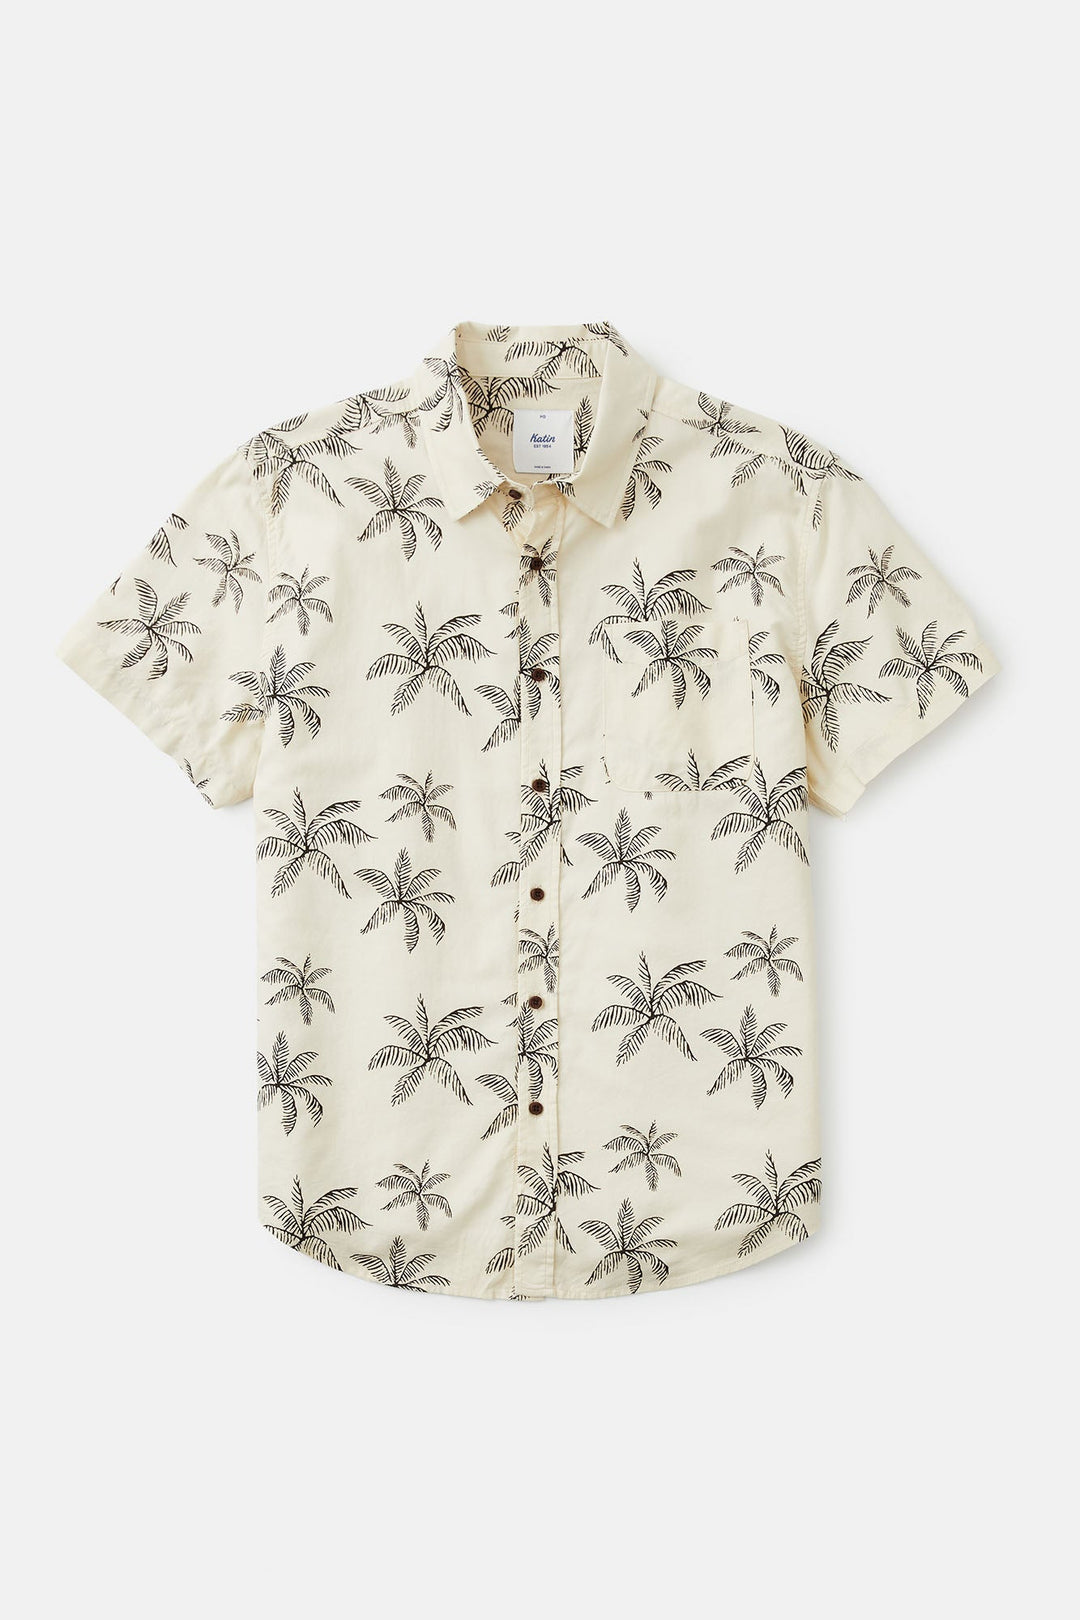 Katin Mai Tai Shirt - Vintage White - Sun Diego Boardshop